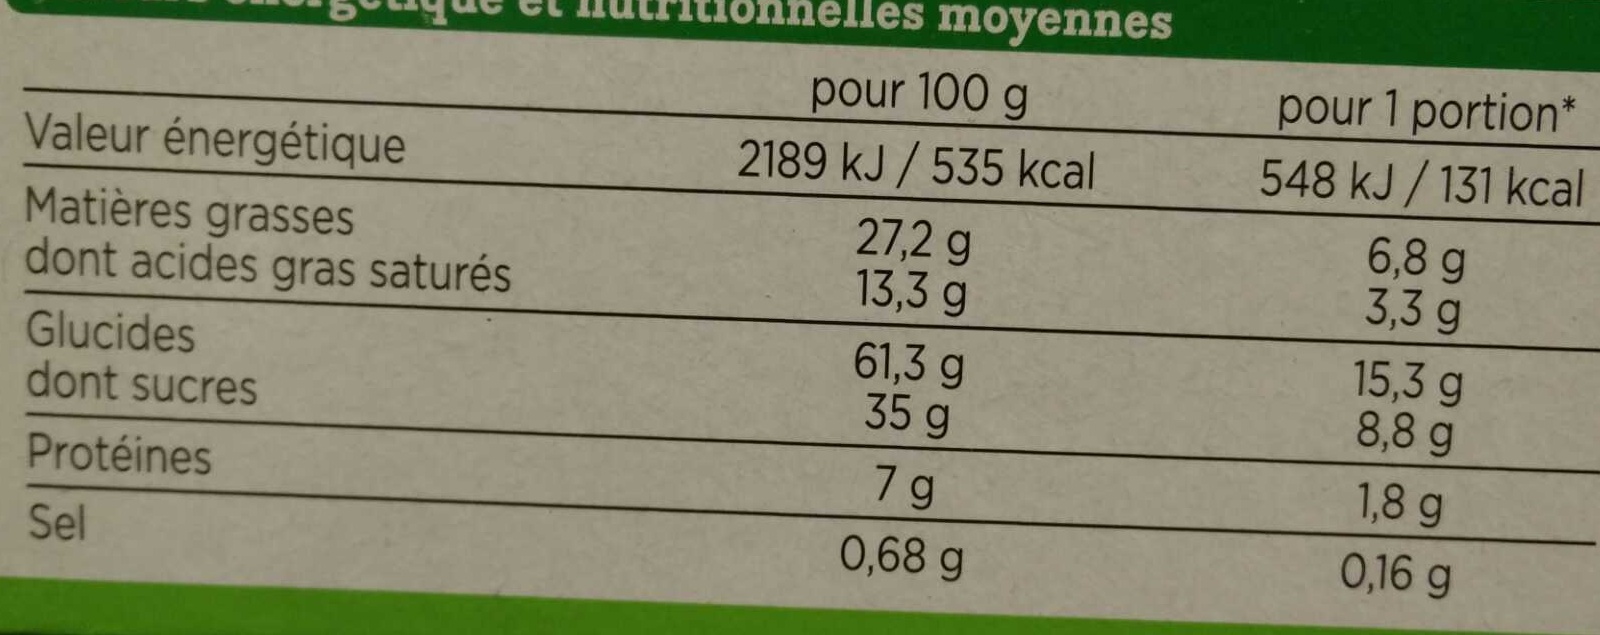 petit beurre tablette chocolat au lait bio - Nutrition facts - fr